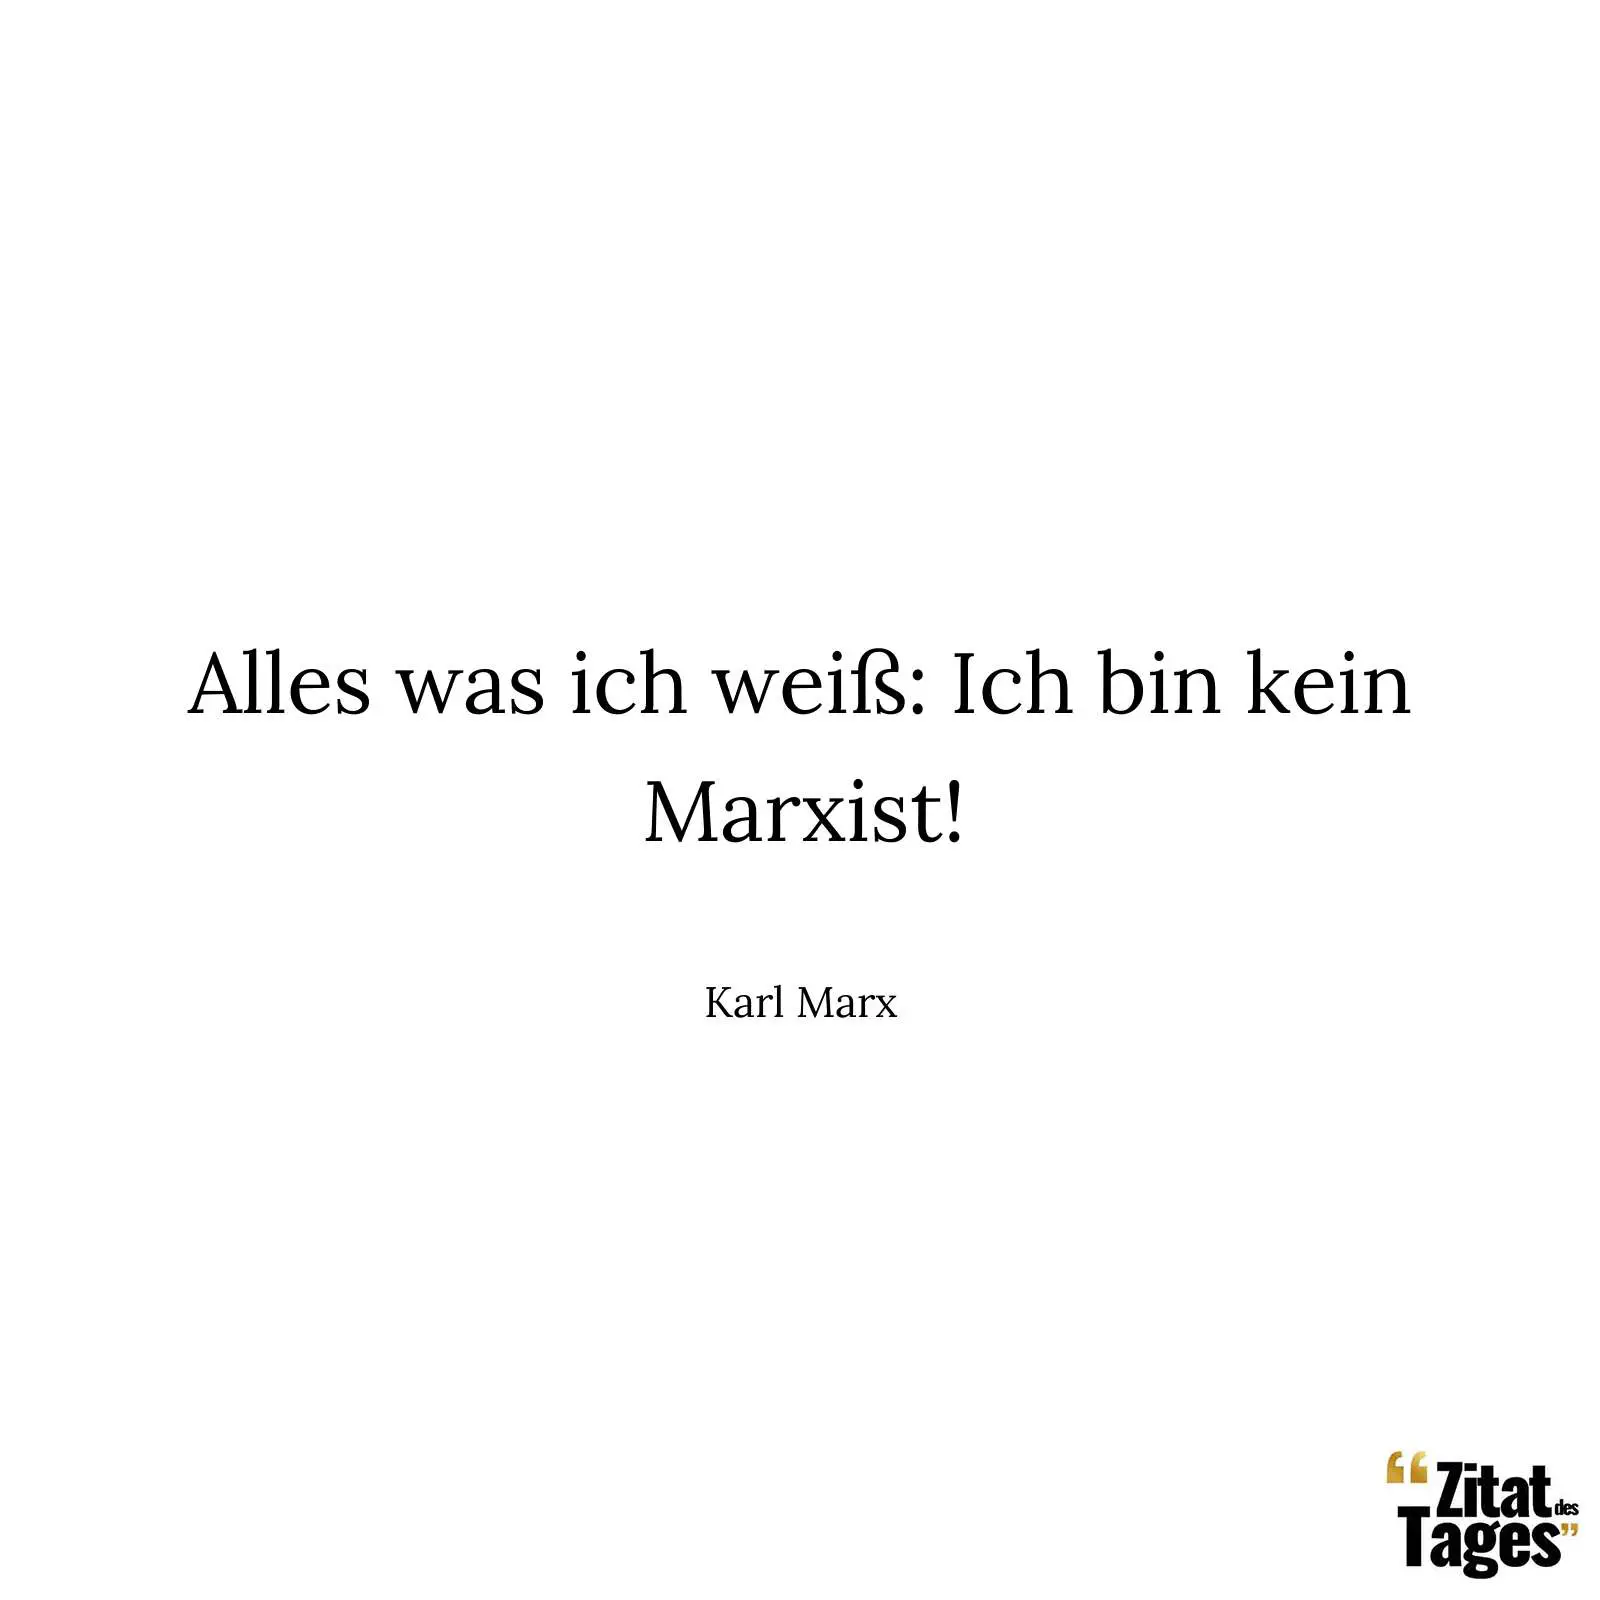 Alles was ich weiß: Ich bin kein Marxist! - Karl Marx